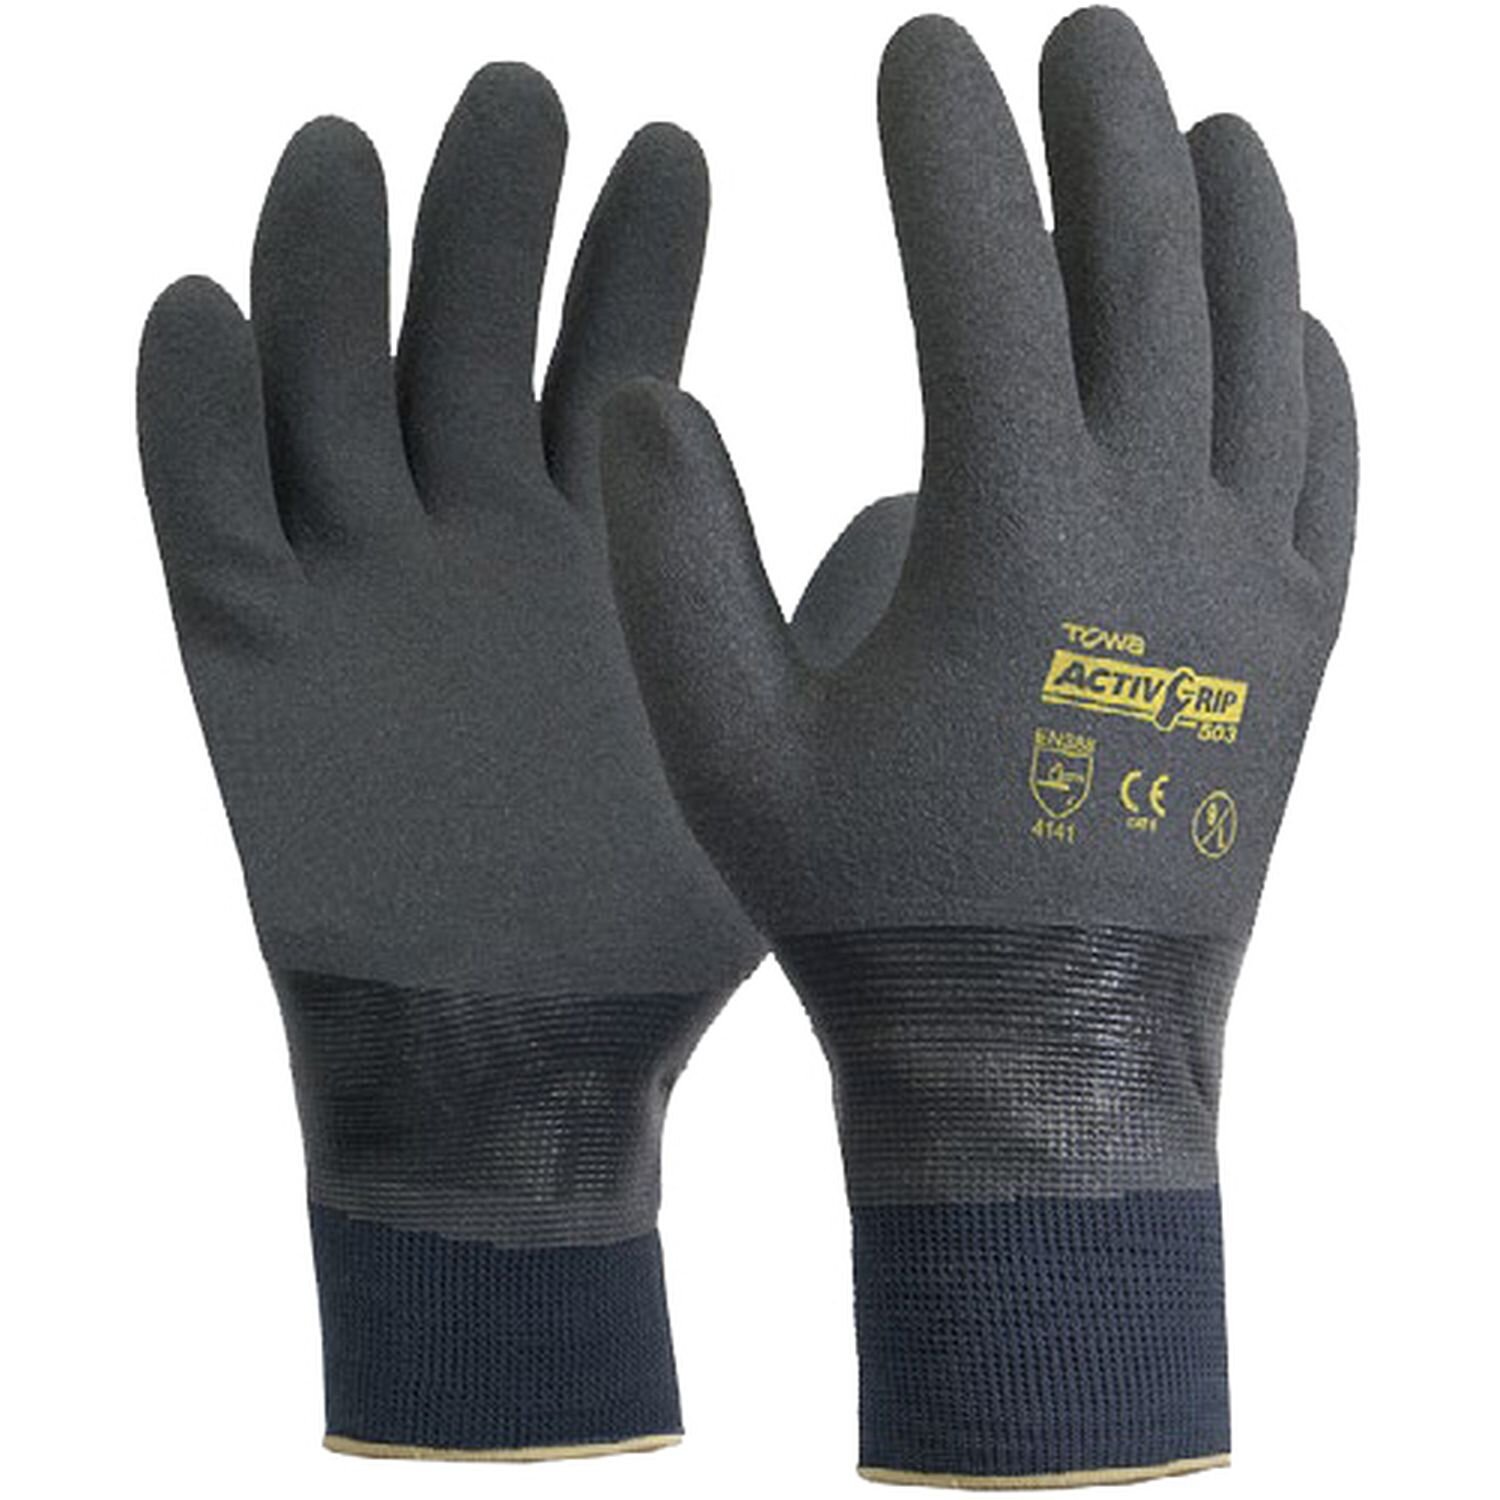 Towa ActivGrip 503 Wet/Dry/Oil Glove